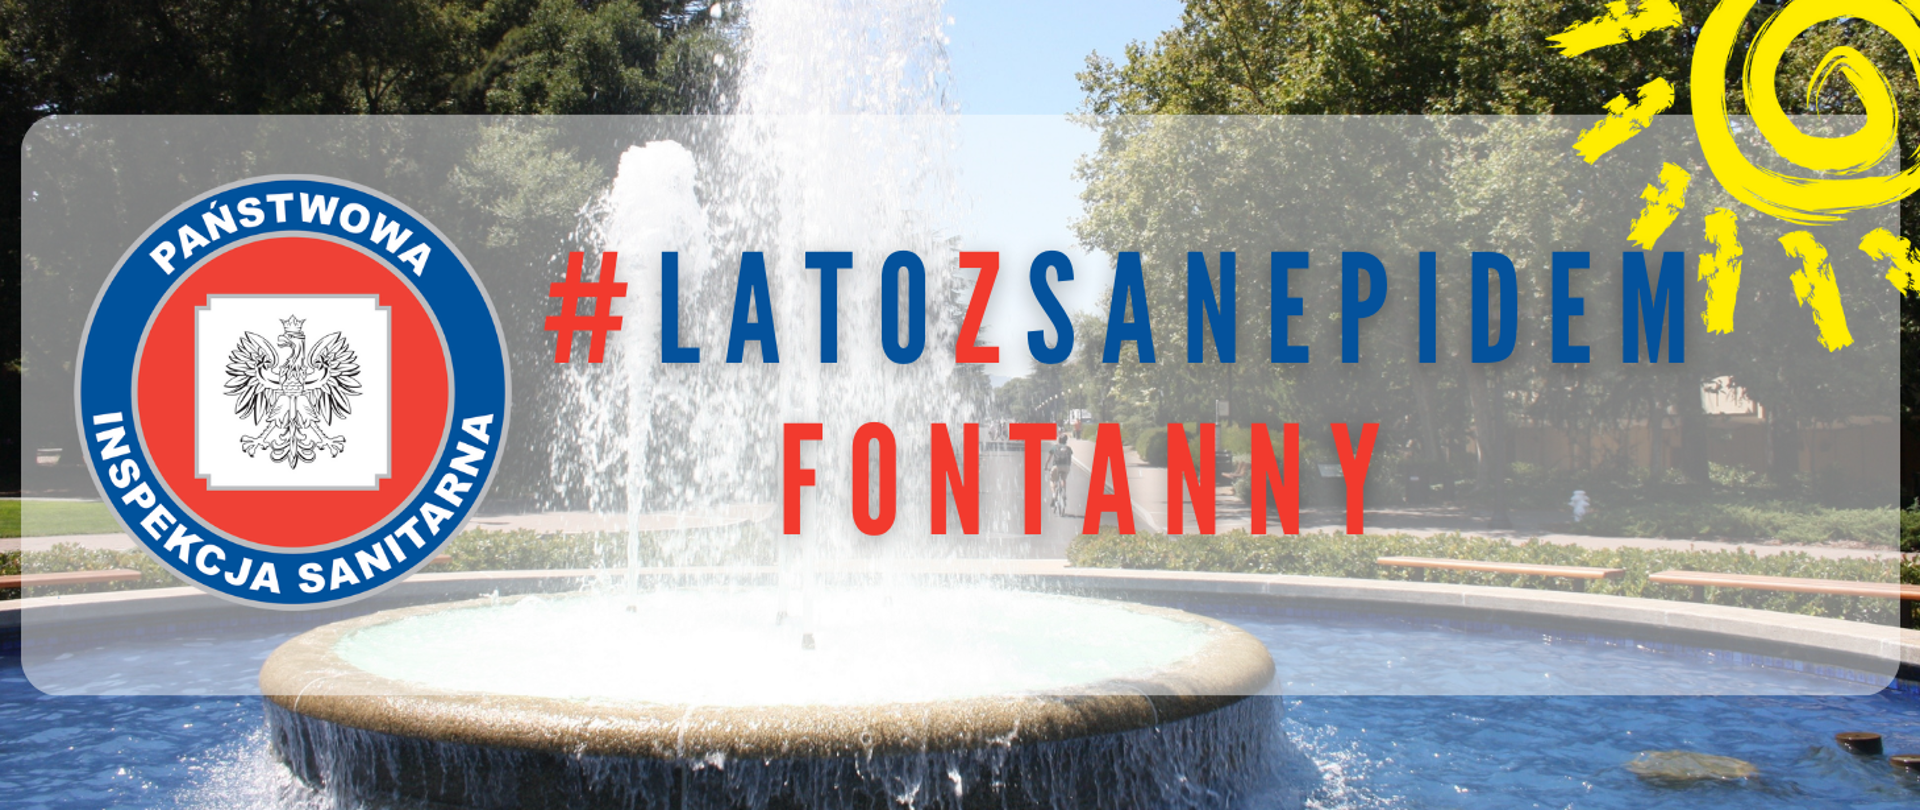 Grafika przedstawia fontannę oraz napis: #latozsanepidem fontanny.